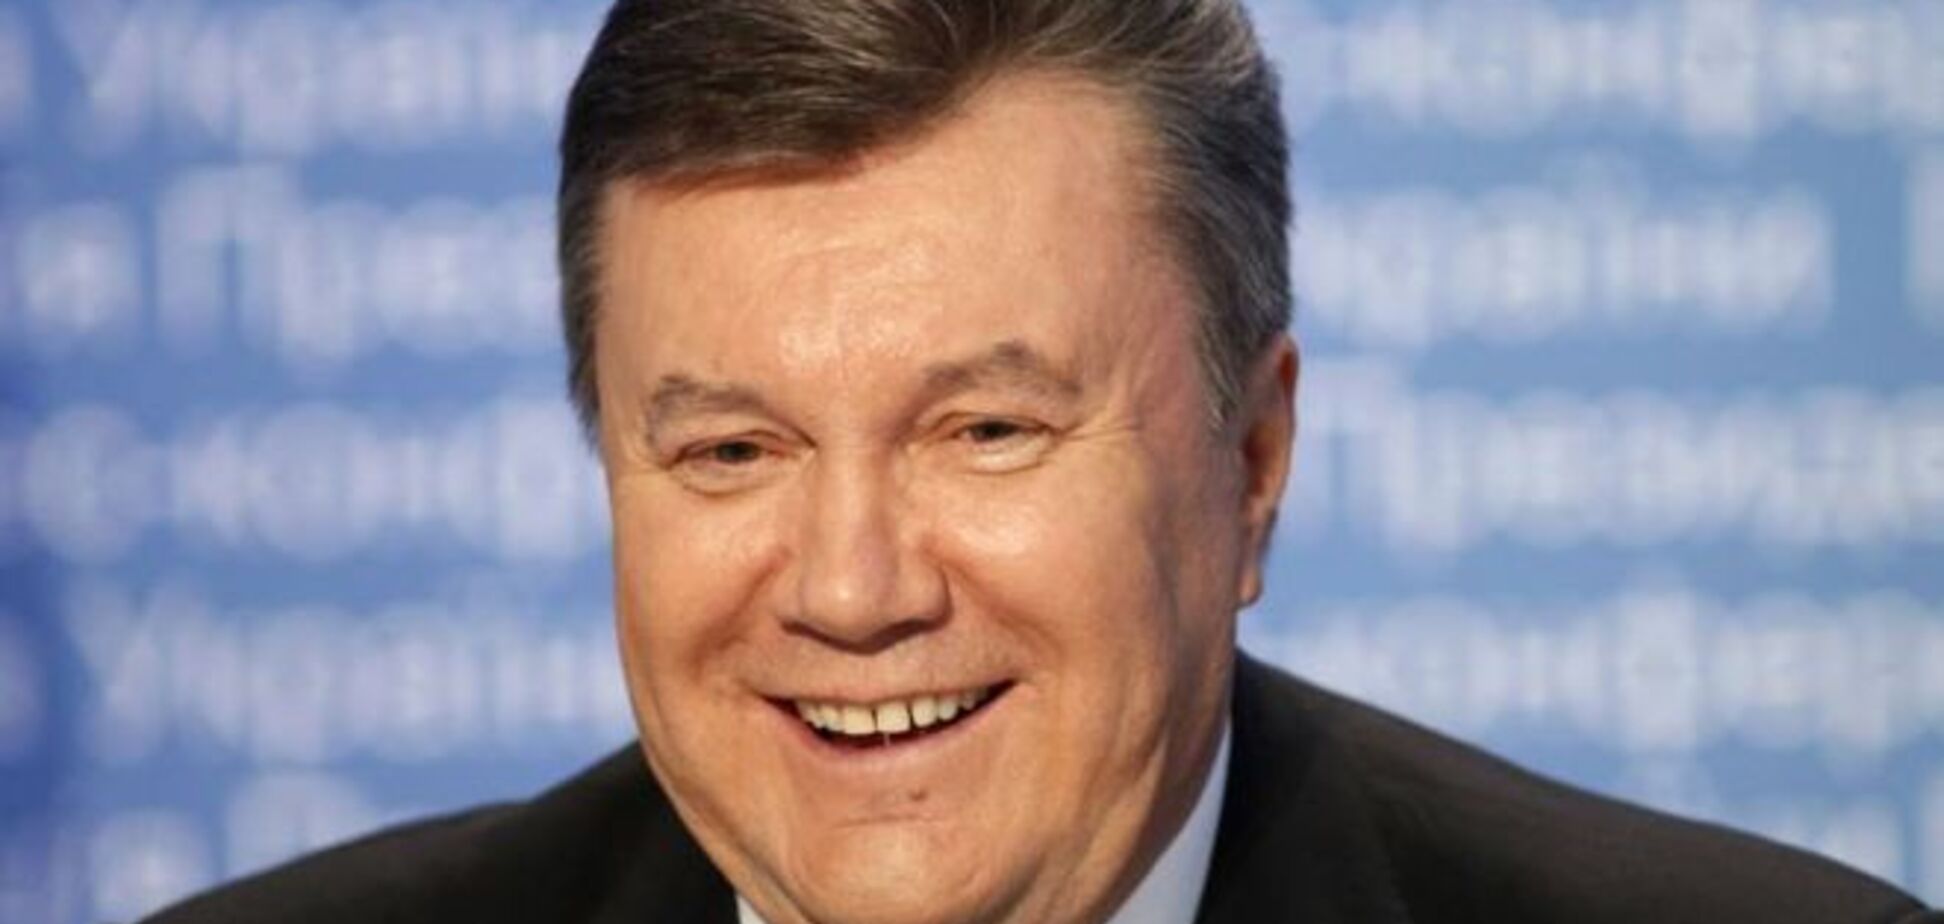 Порошенко вважає неконституційним позбавлення Януковича звання президента